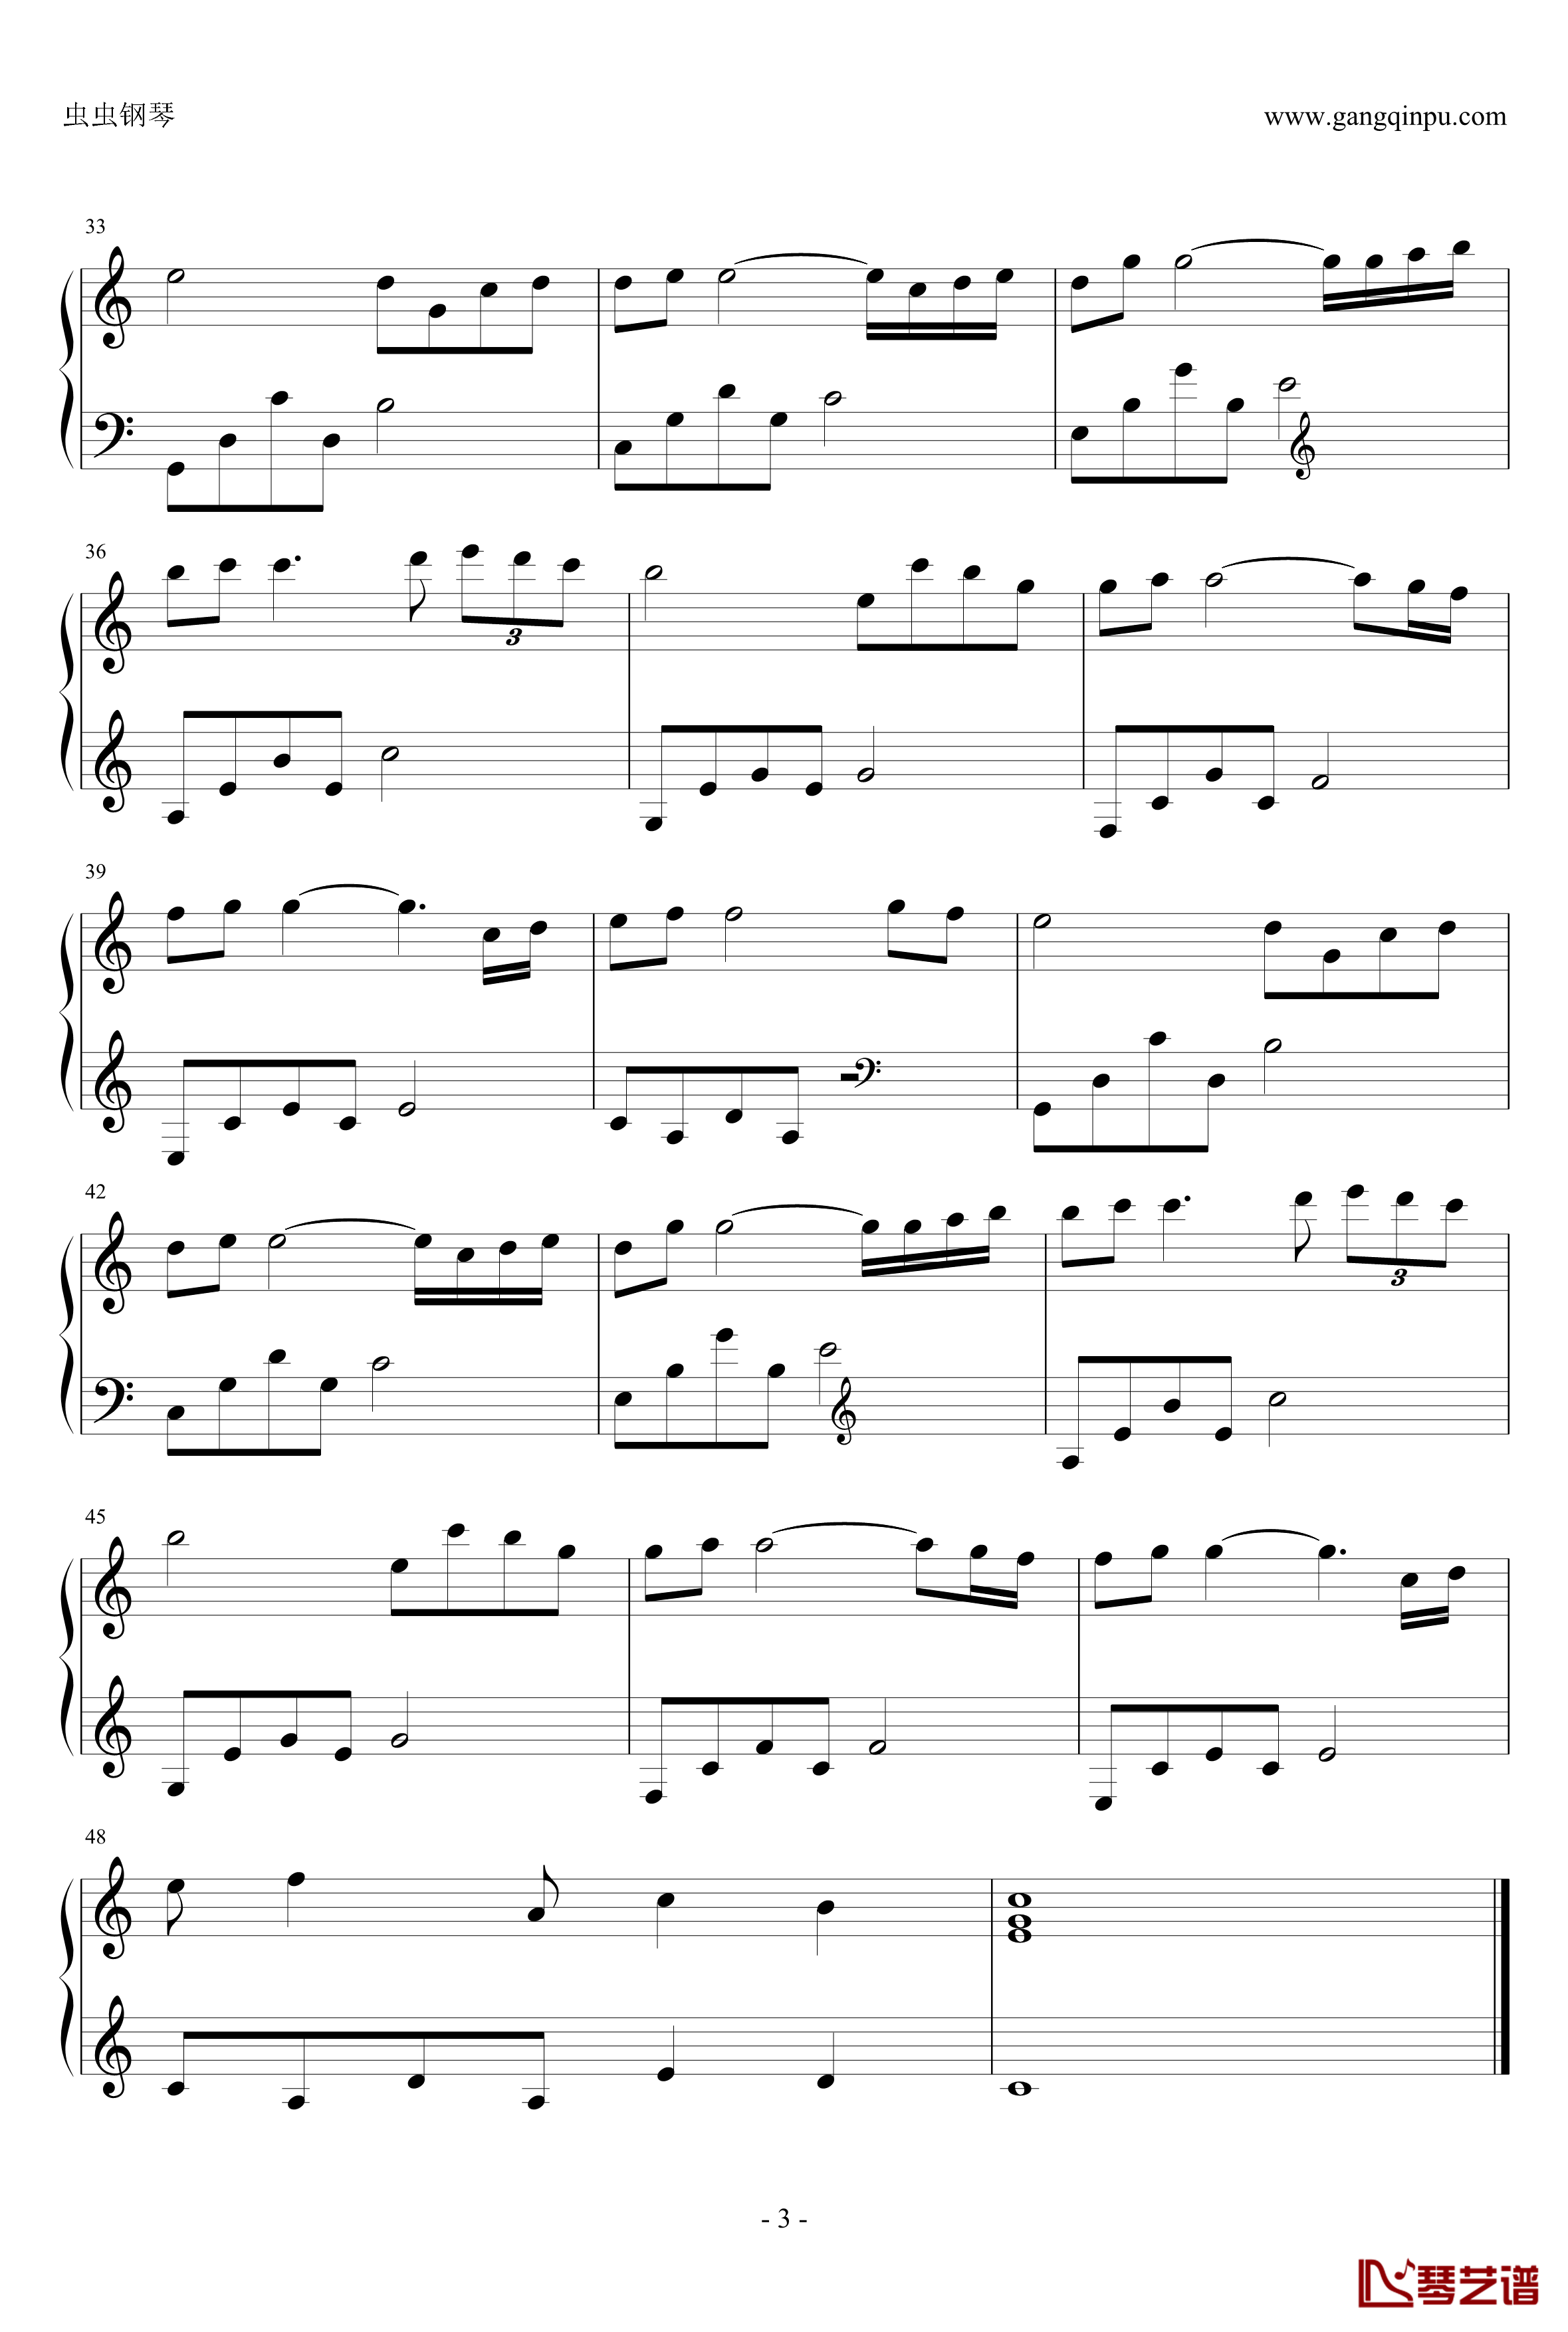 雨的印记钢琴谱 简易版-Yiruma3